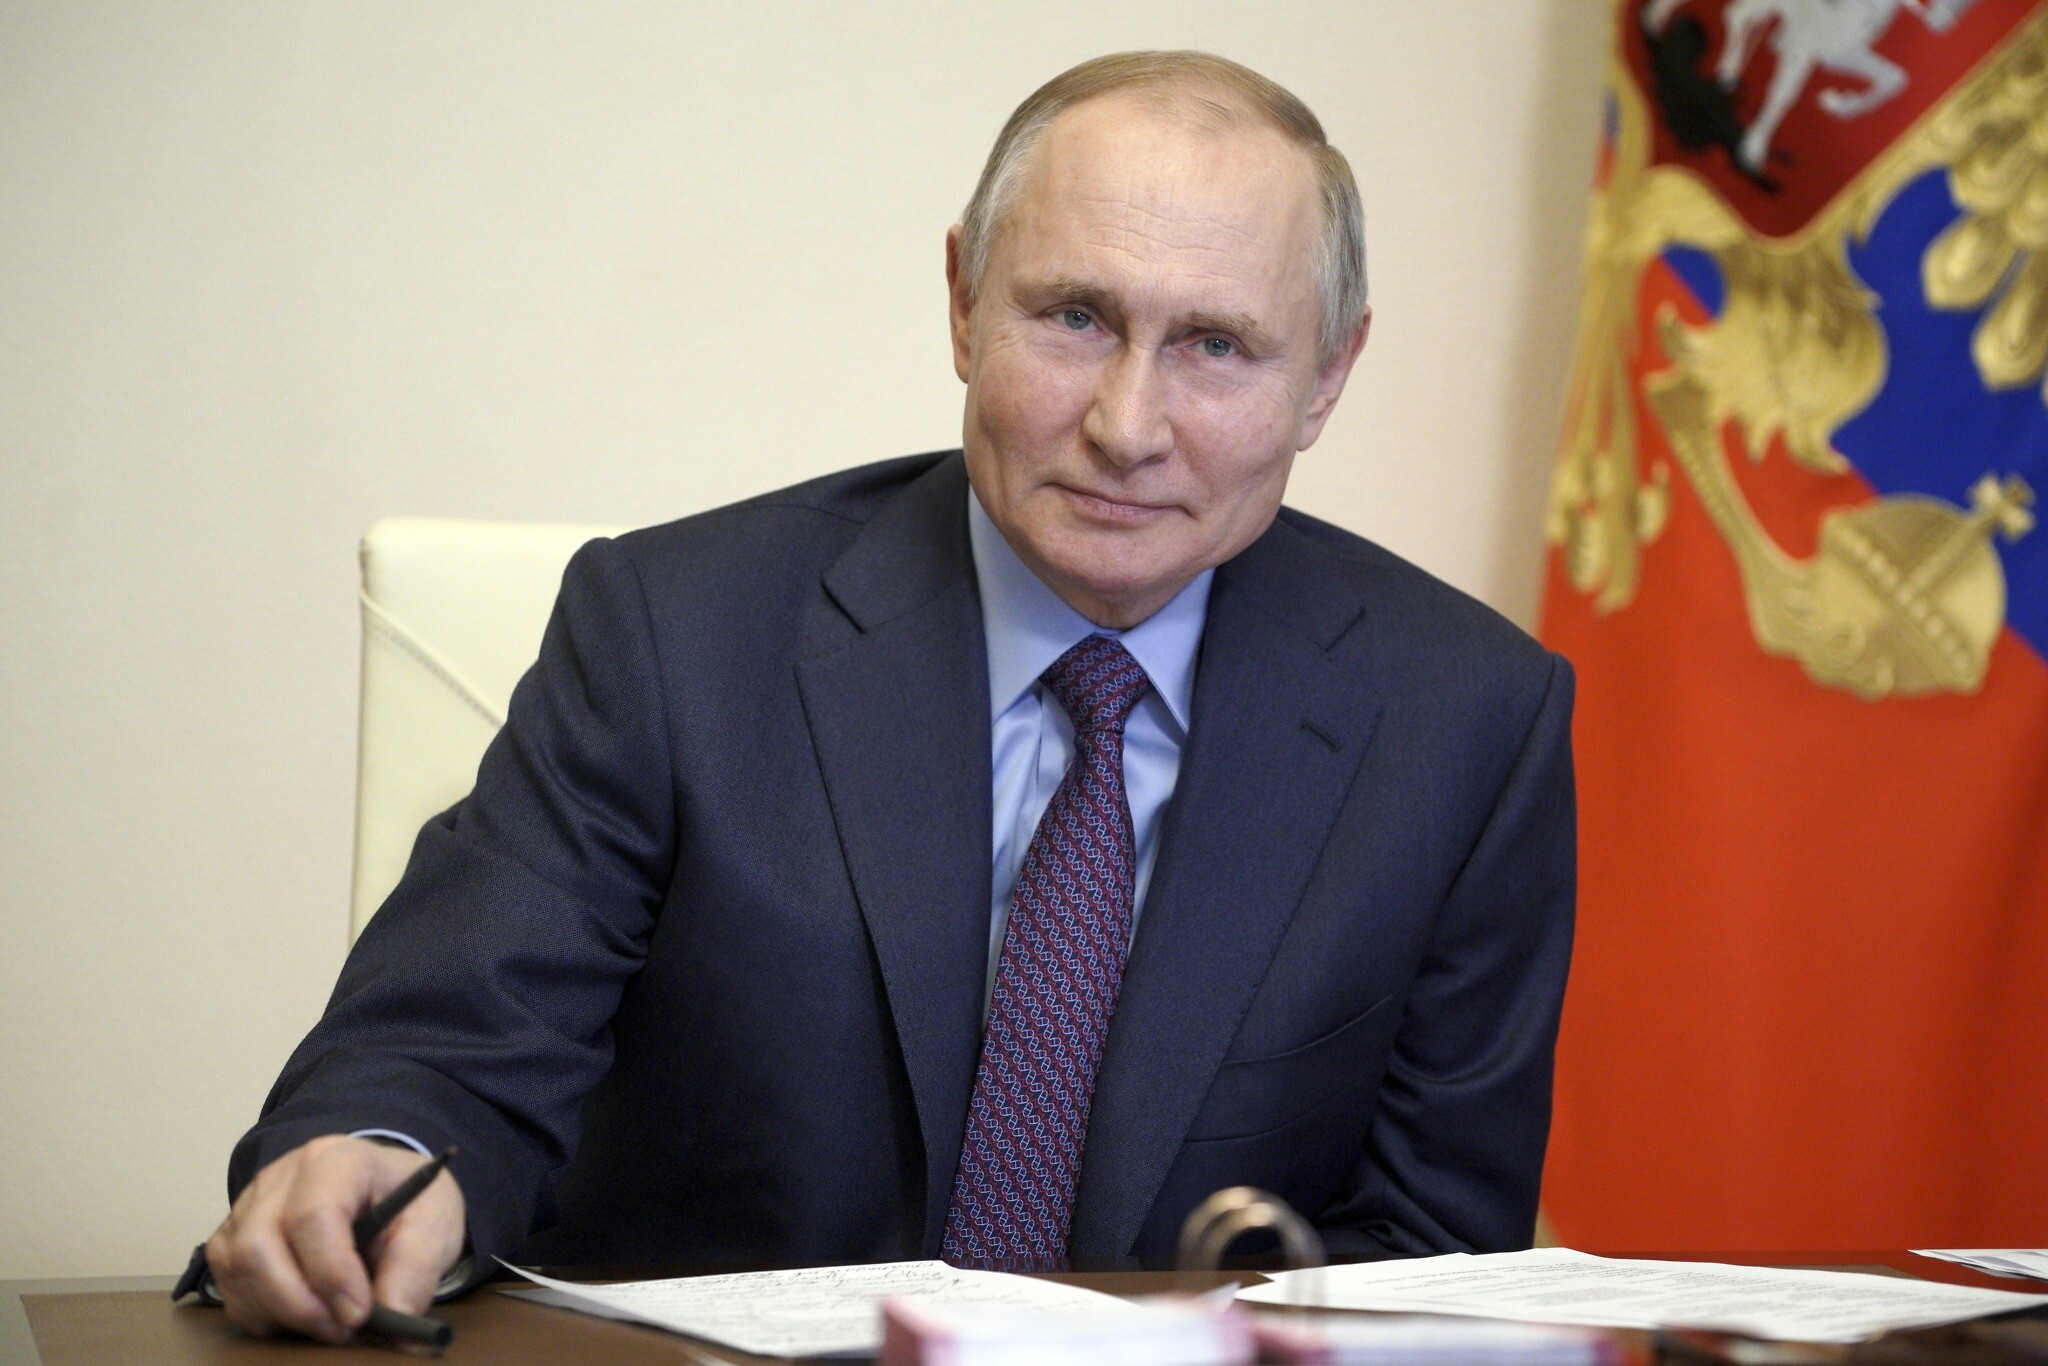  ولادیمیر پوتین رییس جمهور روسیه قانونی را امضا کرده که بر اساس آن می تواند تا سال 2036 همچنان رییس جمهور روسیه باشد.